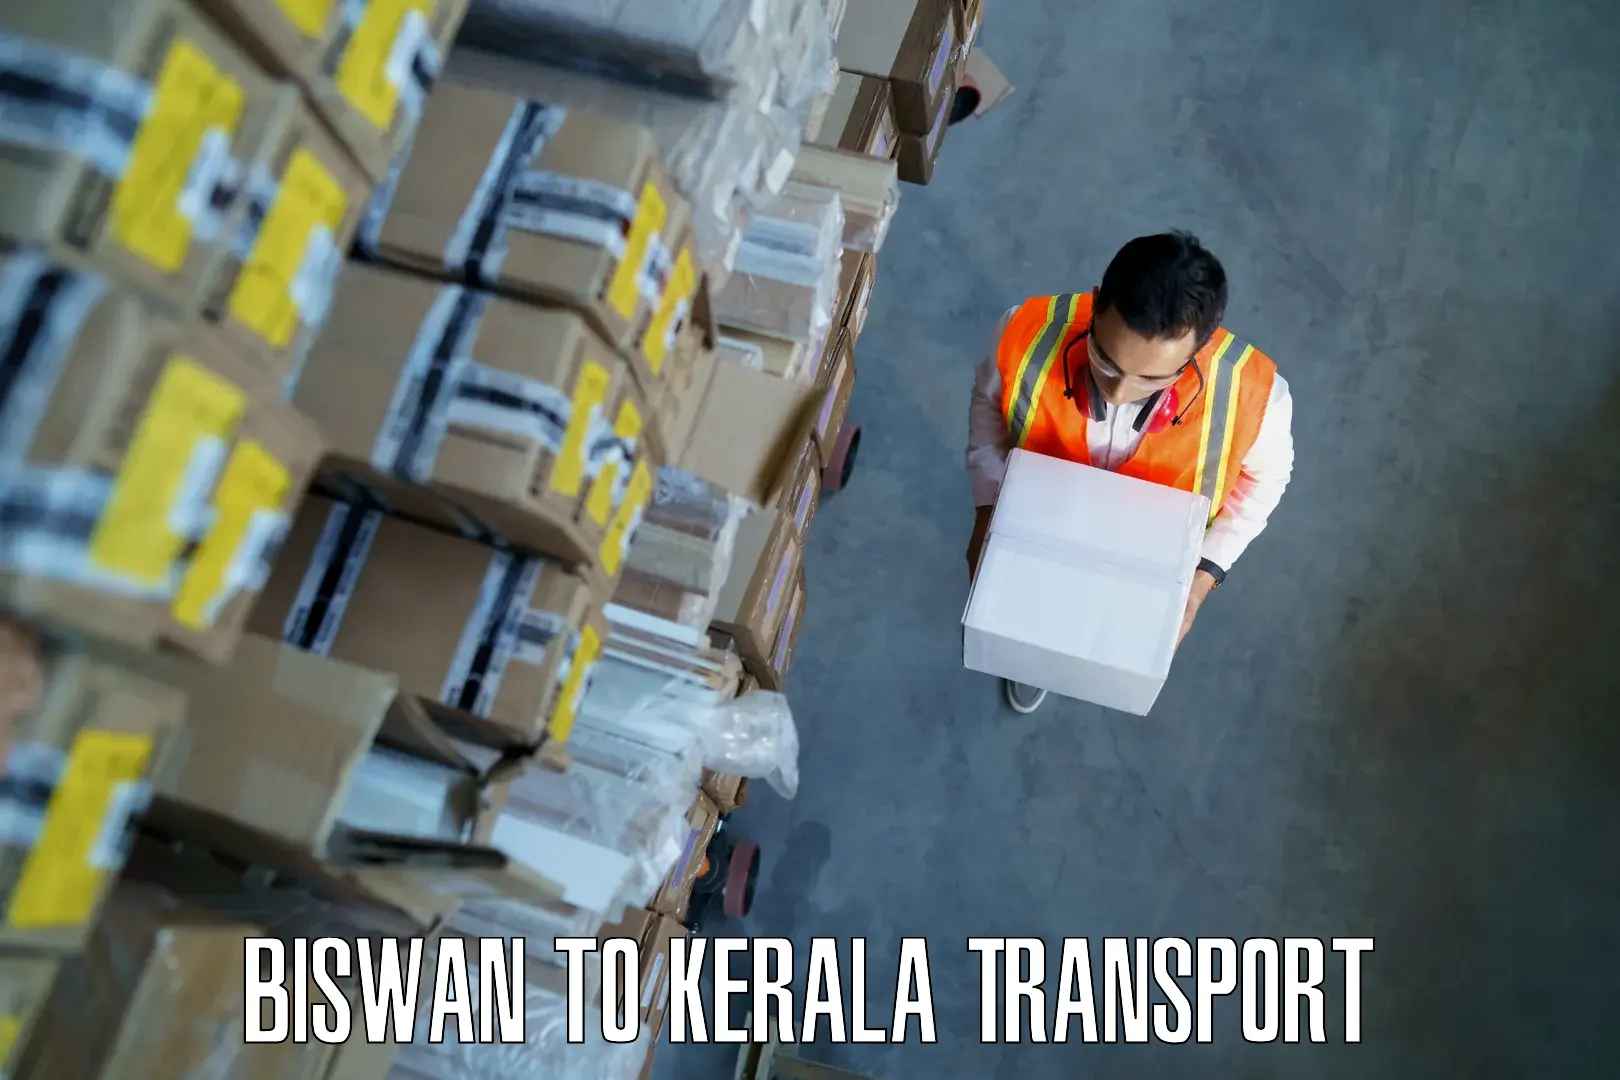 Interstate transport services Biswan to Karukachal